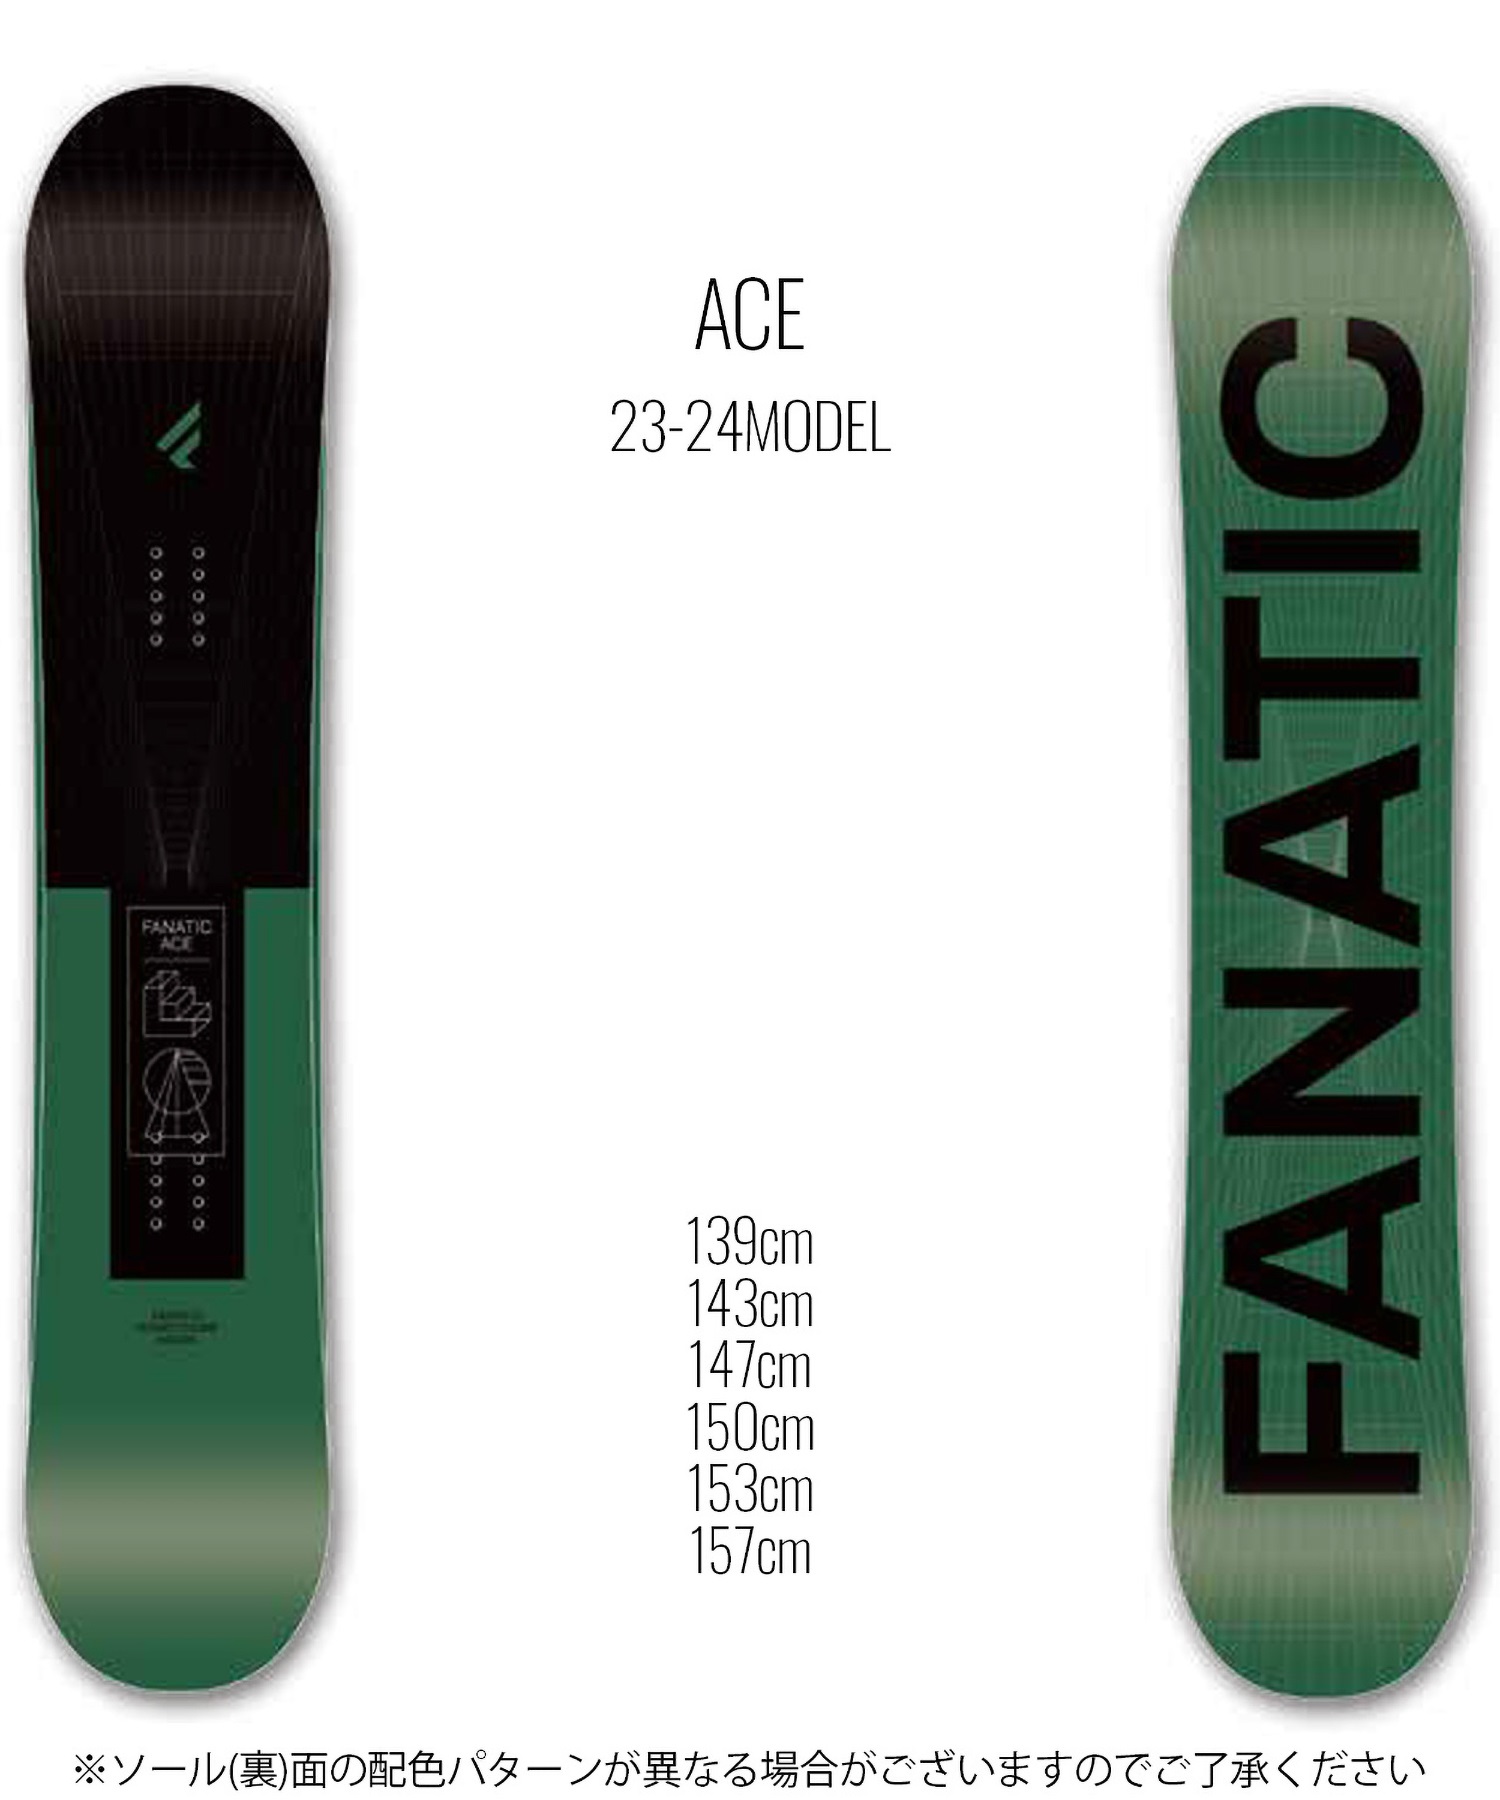 スノーボード 板 ユニセックス FANATIC ファナティック ACE 23-24 